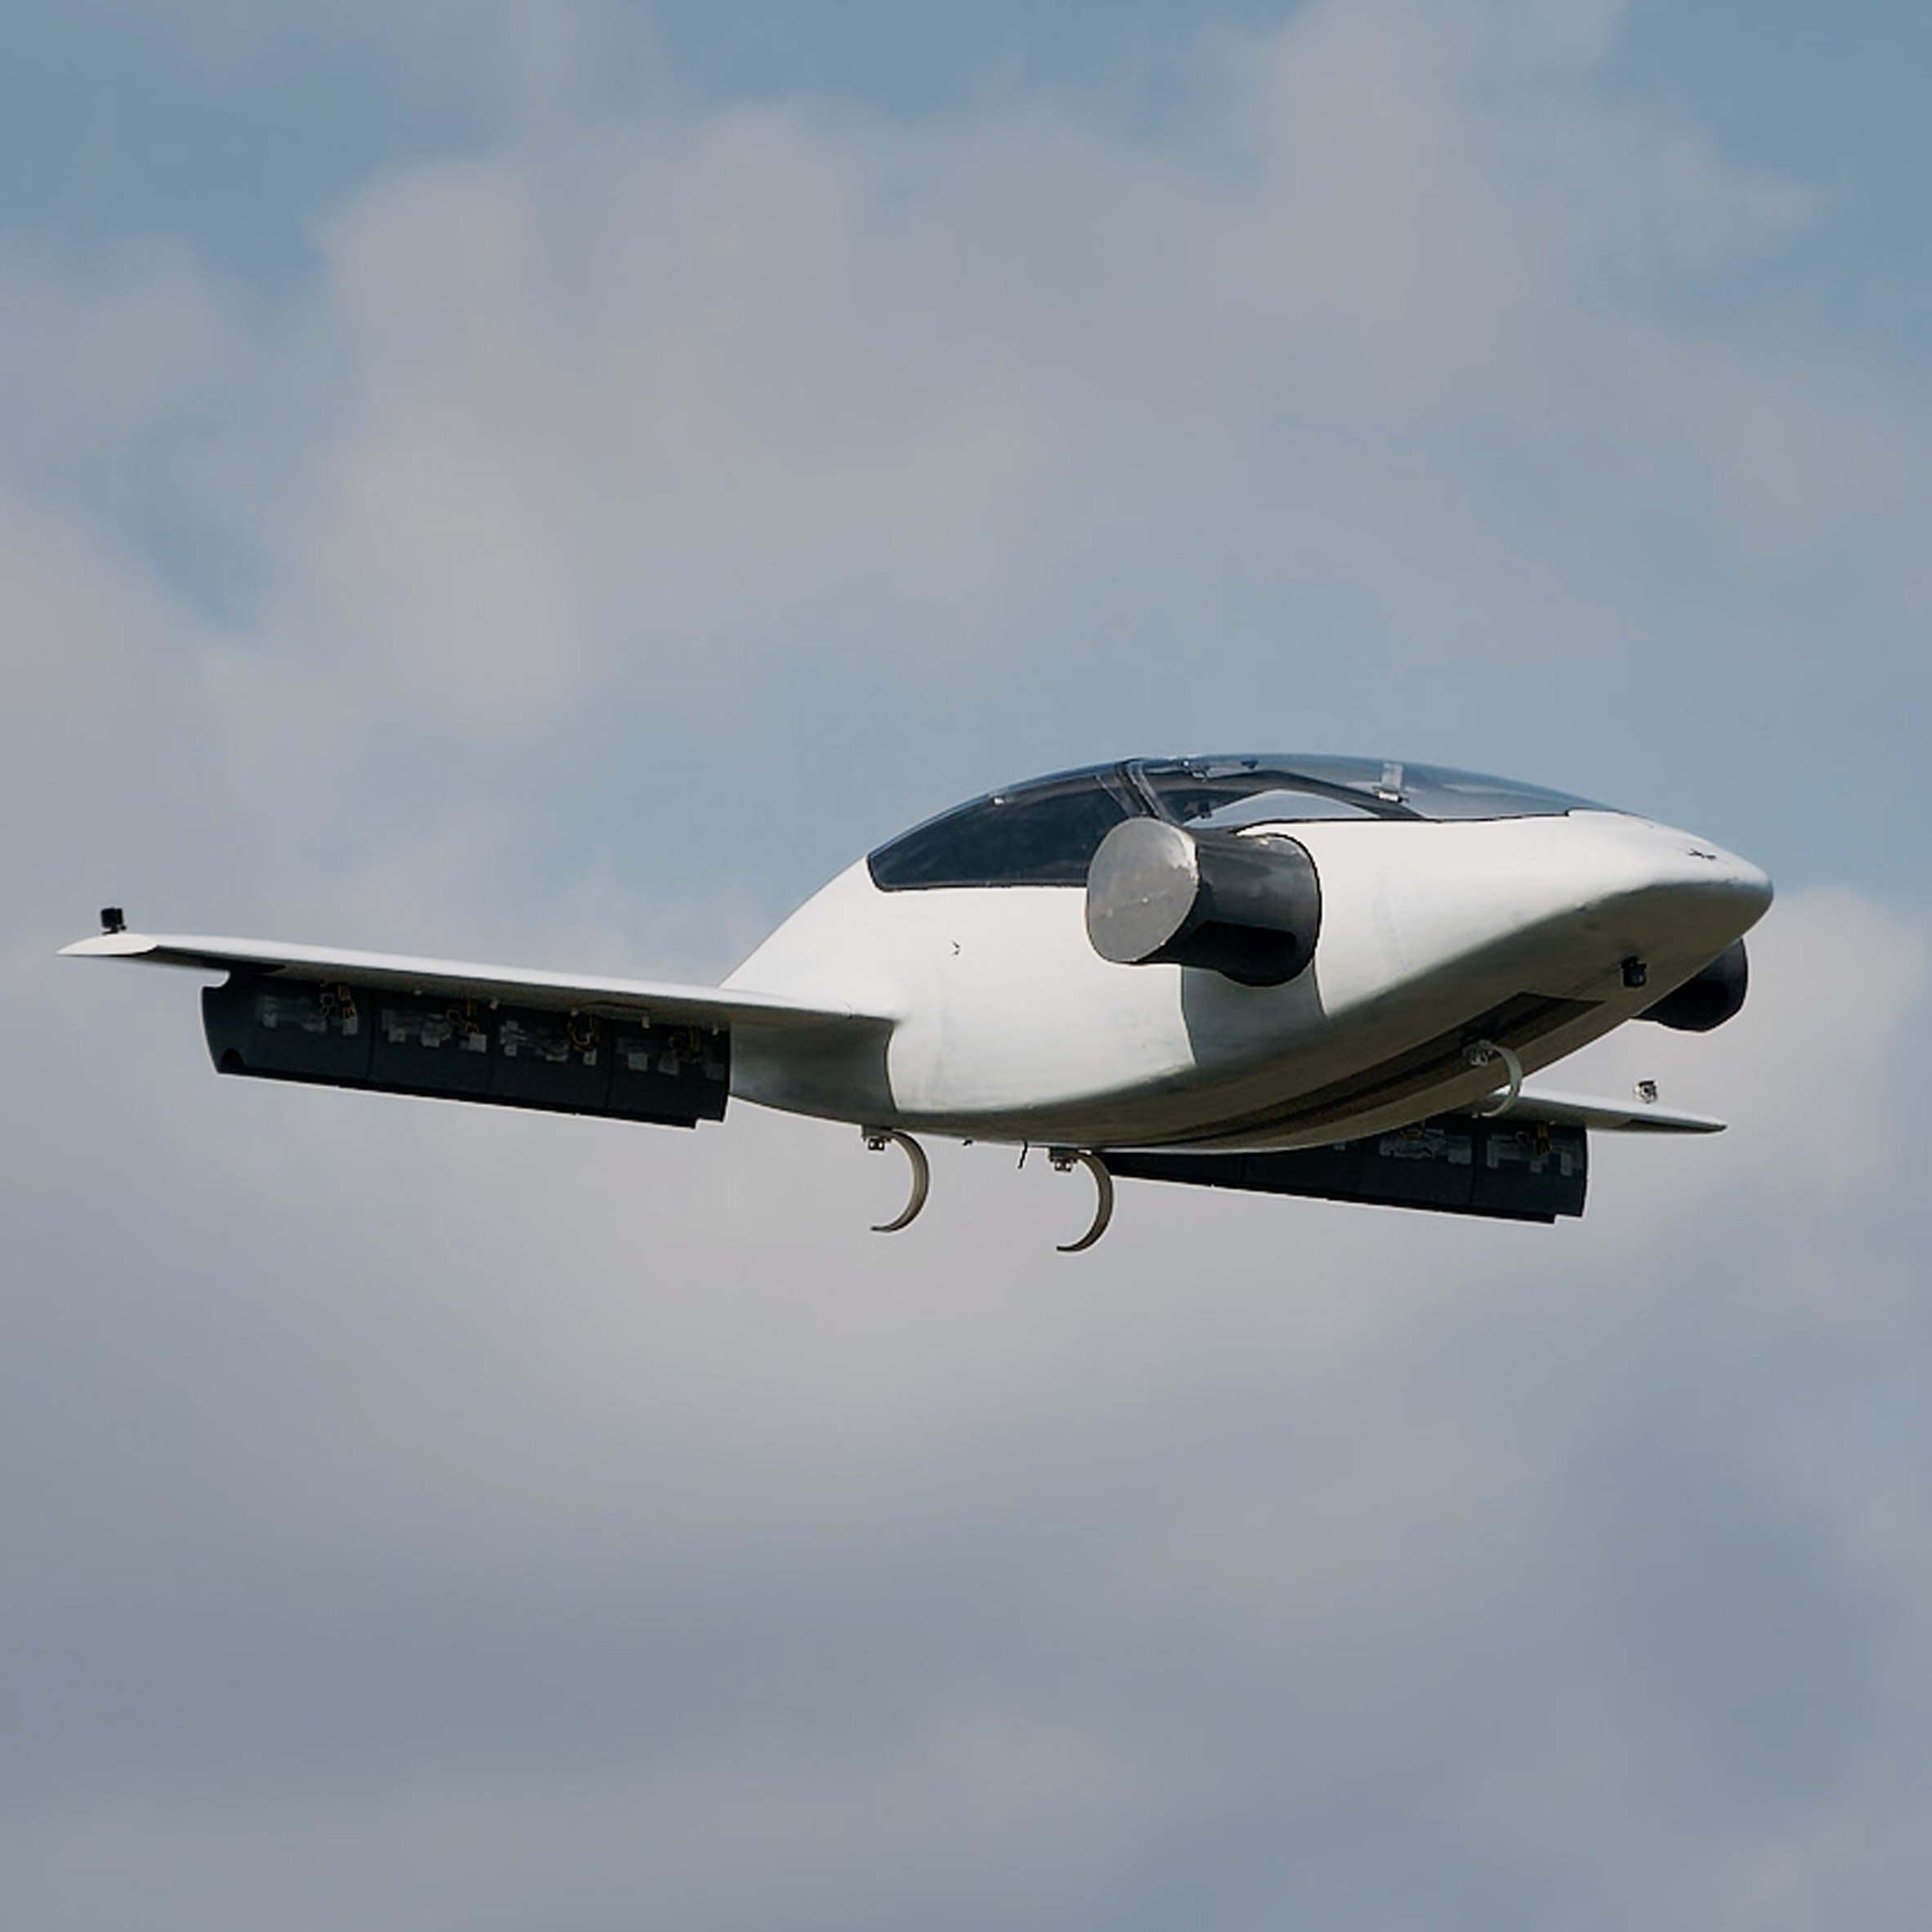 Самолет вертикального полета. Lilium Jet самолет. Летающее такси Lilium. Летательный аппарат с вертикальным взлетом Тесла. Электро спамолет прототип.